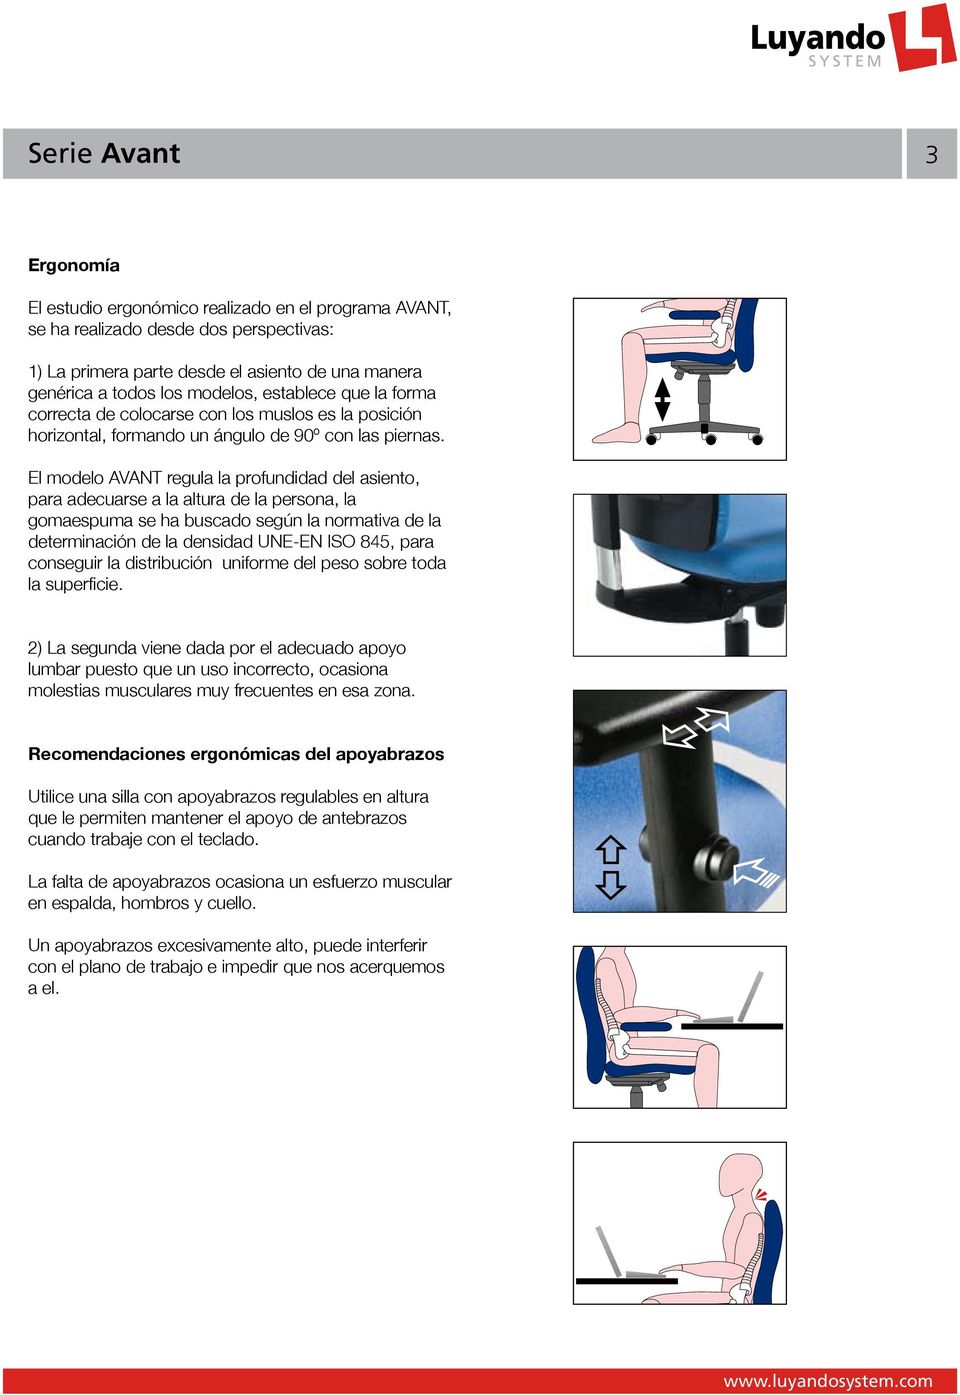 El modelo AVANT regula la profundidad del asiento, para adecuarse a la altura de la persona, la gomaespuma se ha buscado según la normativa de la determinación de la densidad UNE-EN ISO 845, para